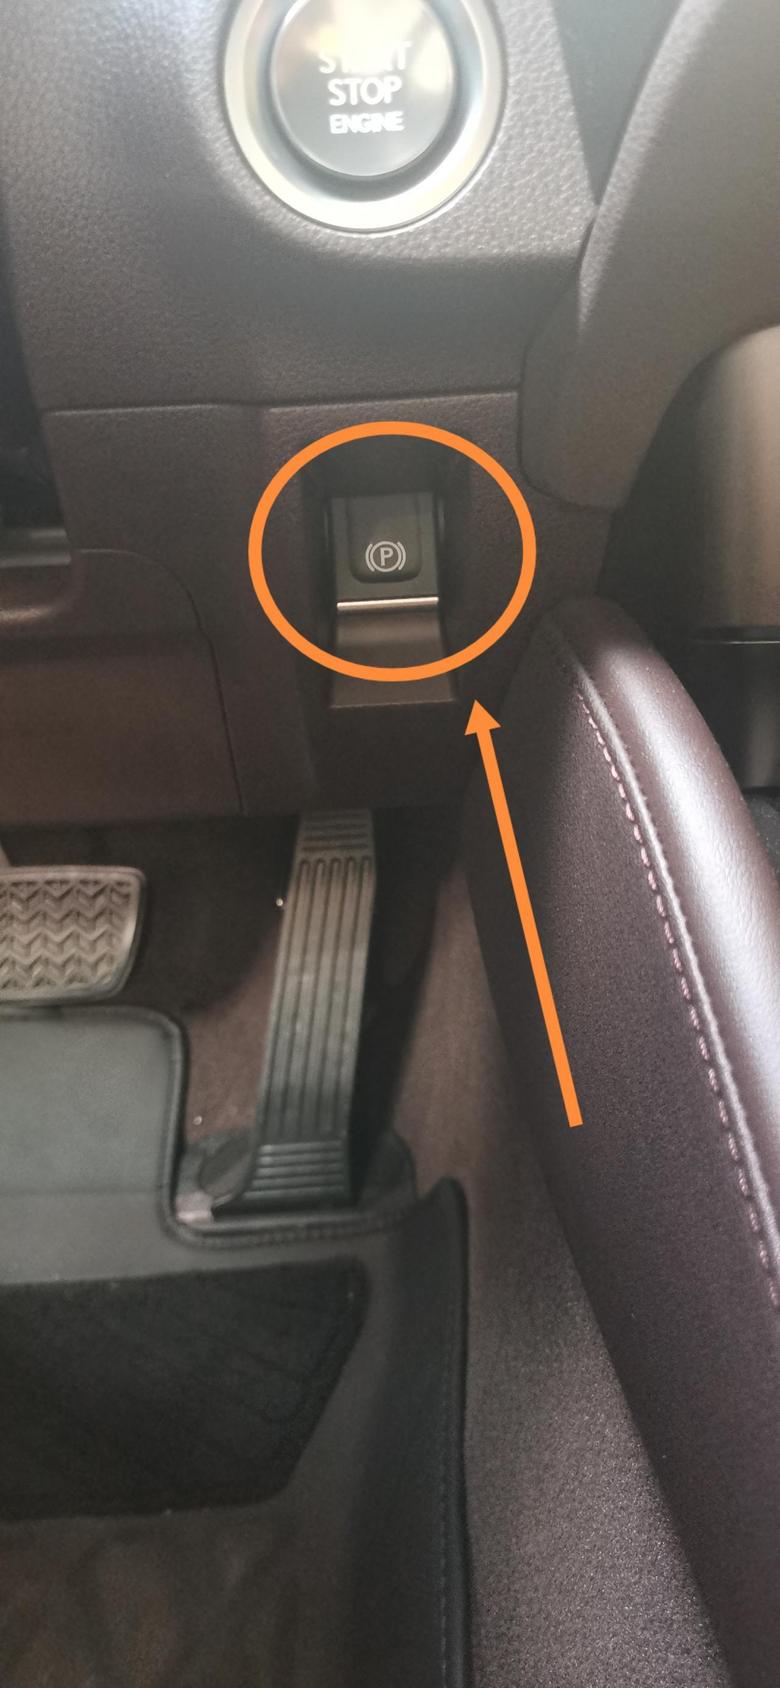 雷克萨斯es 如题，这个驻车按钮什么时候使用？我一般使用自动驻车功能，没用过这个按键